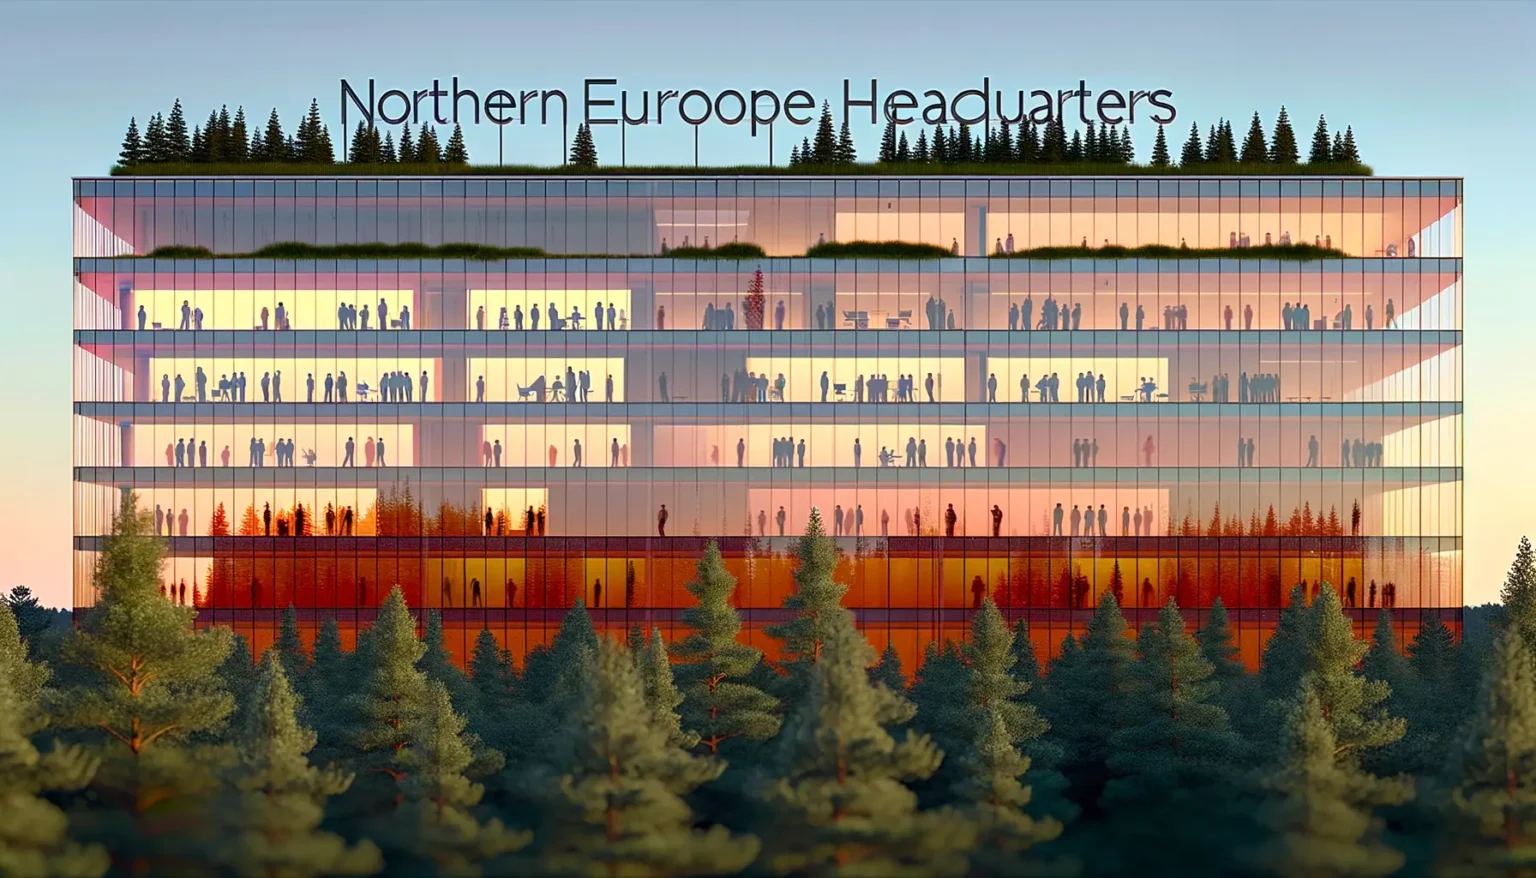 Ein modernes mehrstöckiges Gebäude, das als "Northern Europe Headquarters" bezeichnet wird, mit einer begrünten Dachterrasse und sichtbaren Silhouetten von Menschen durch die gläsernen Außenwände, eingebettet in eine waldreiche Landschaft bei Sonnenuntergang.